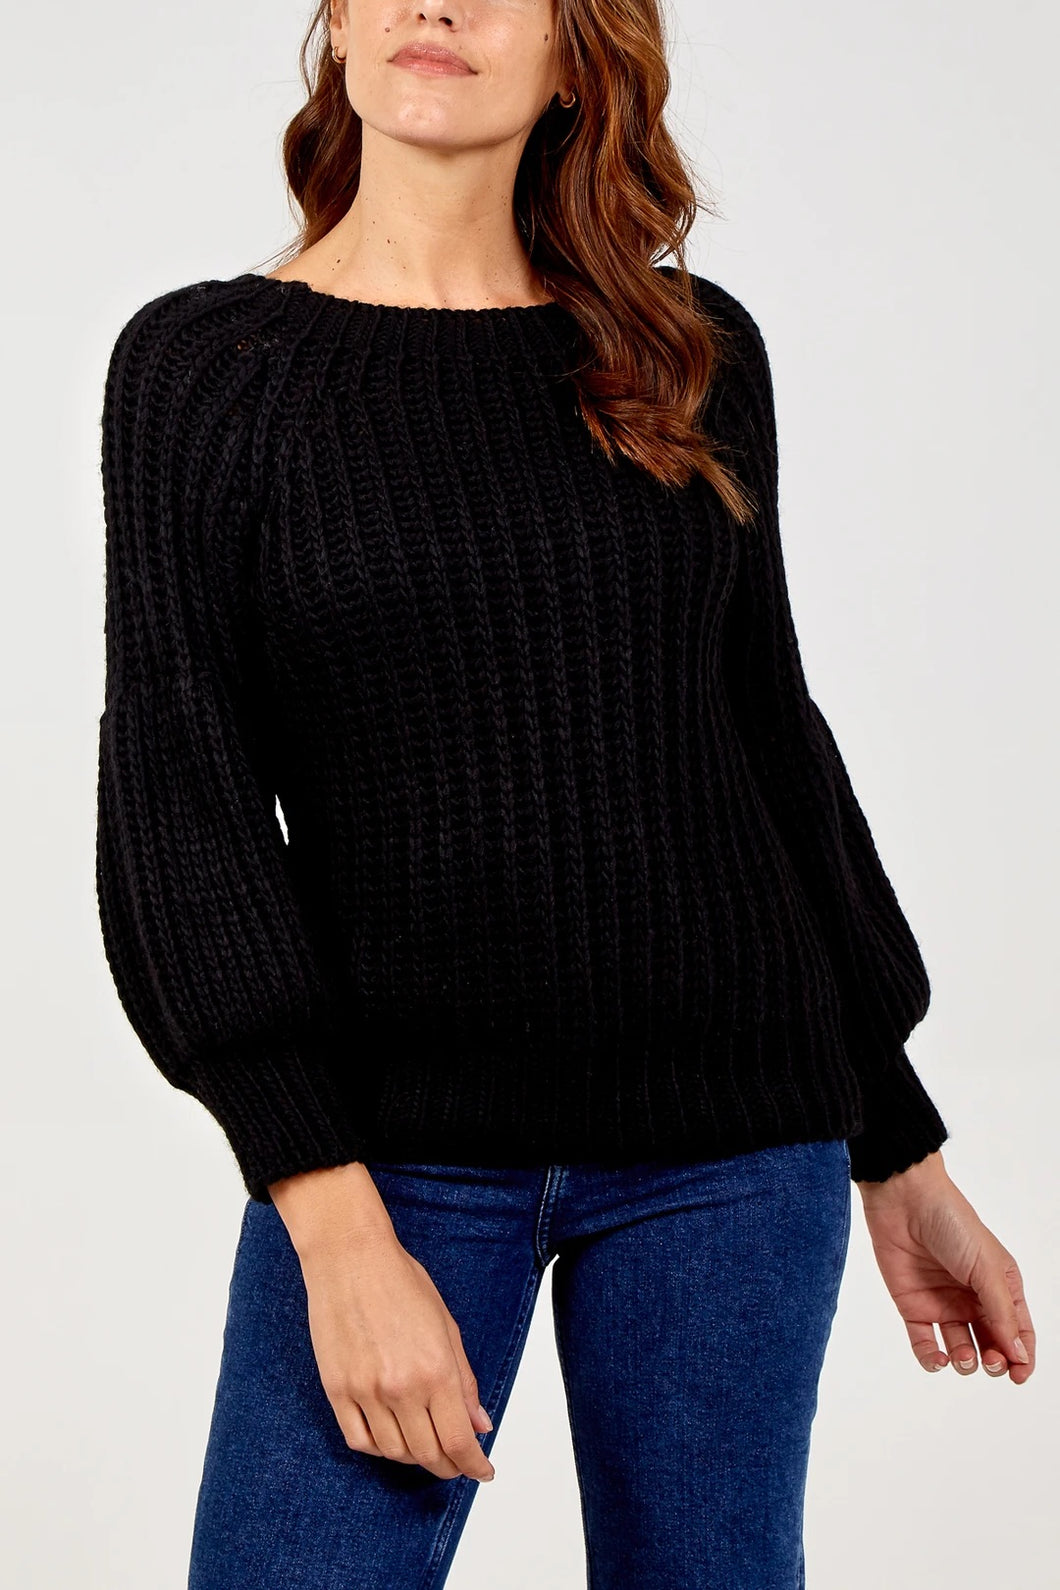 Black knit Jumper | The Pretty Perfect Boutique